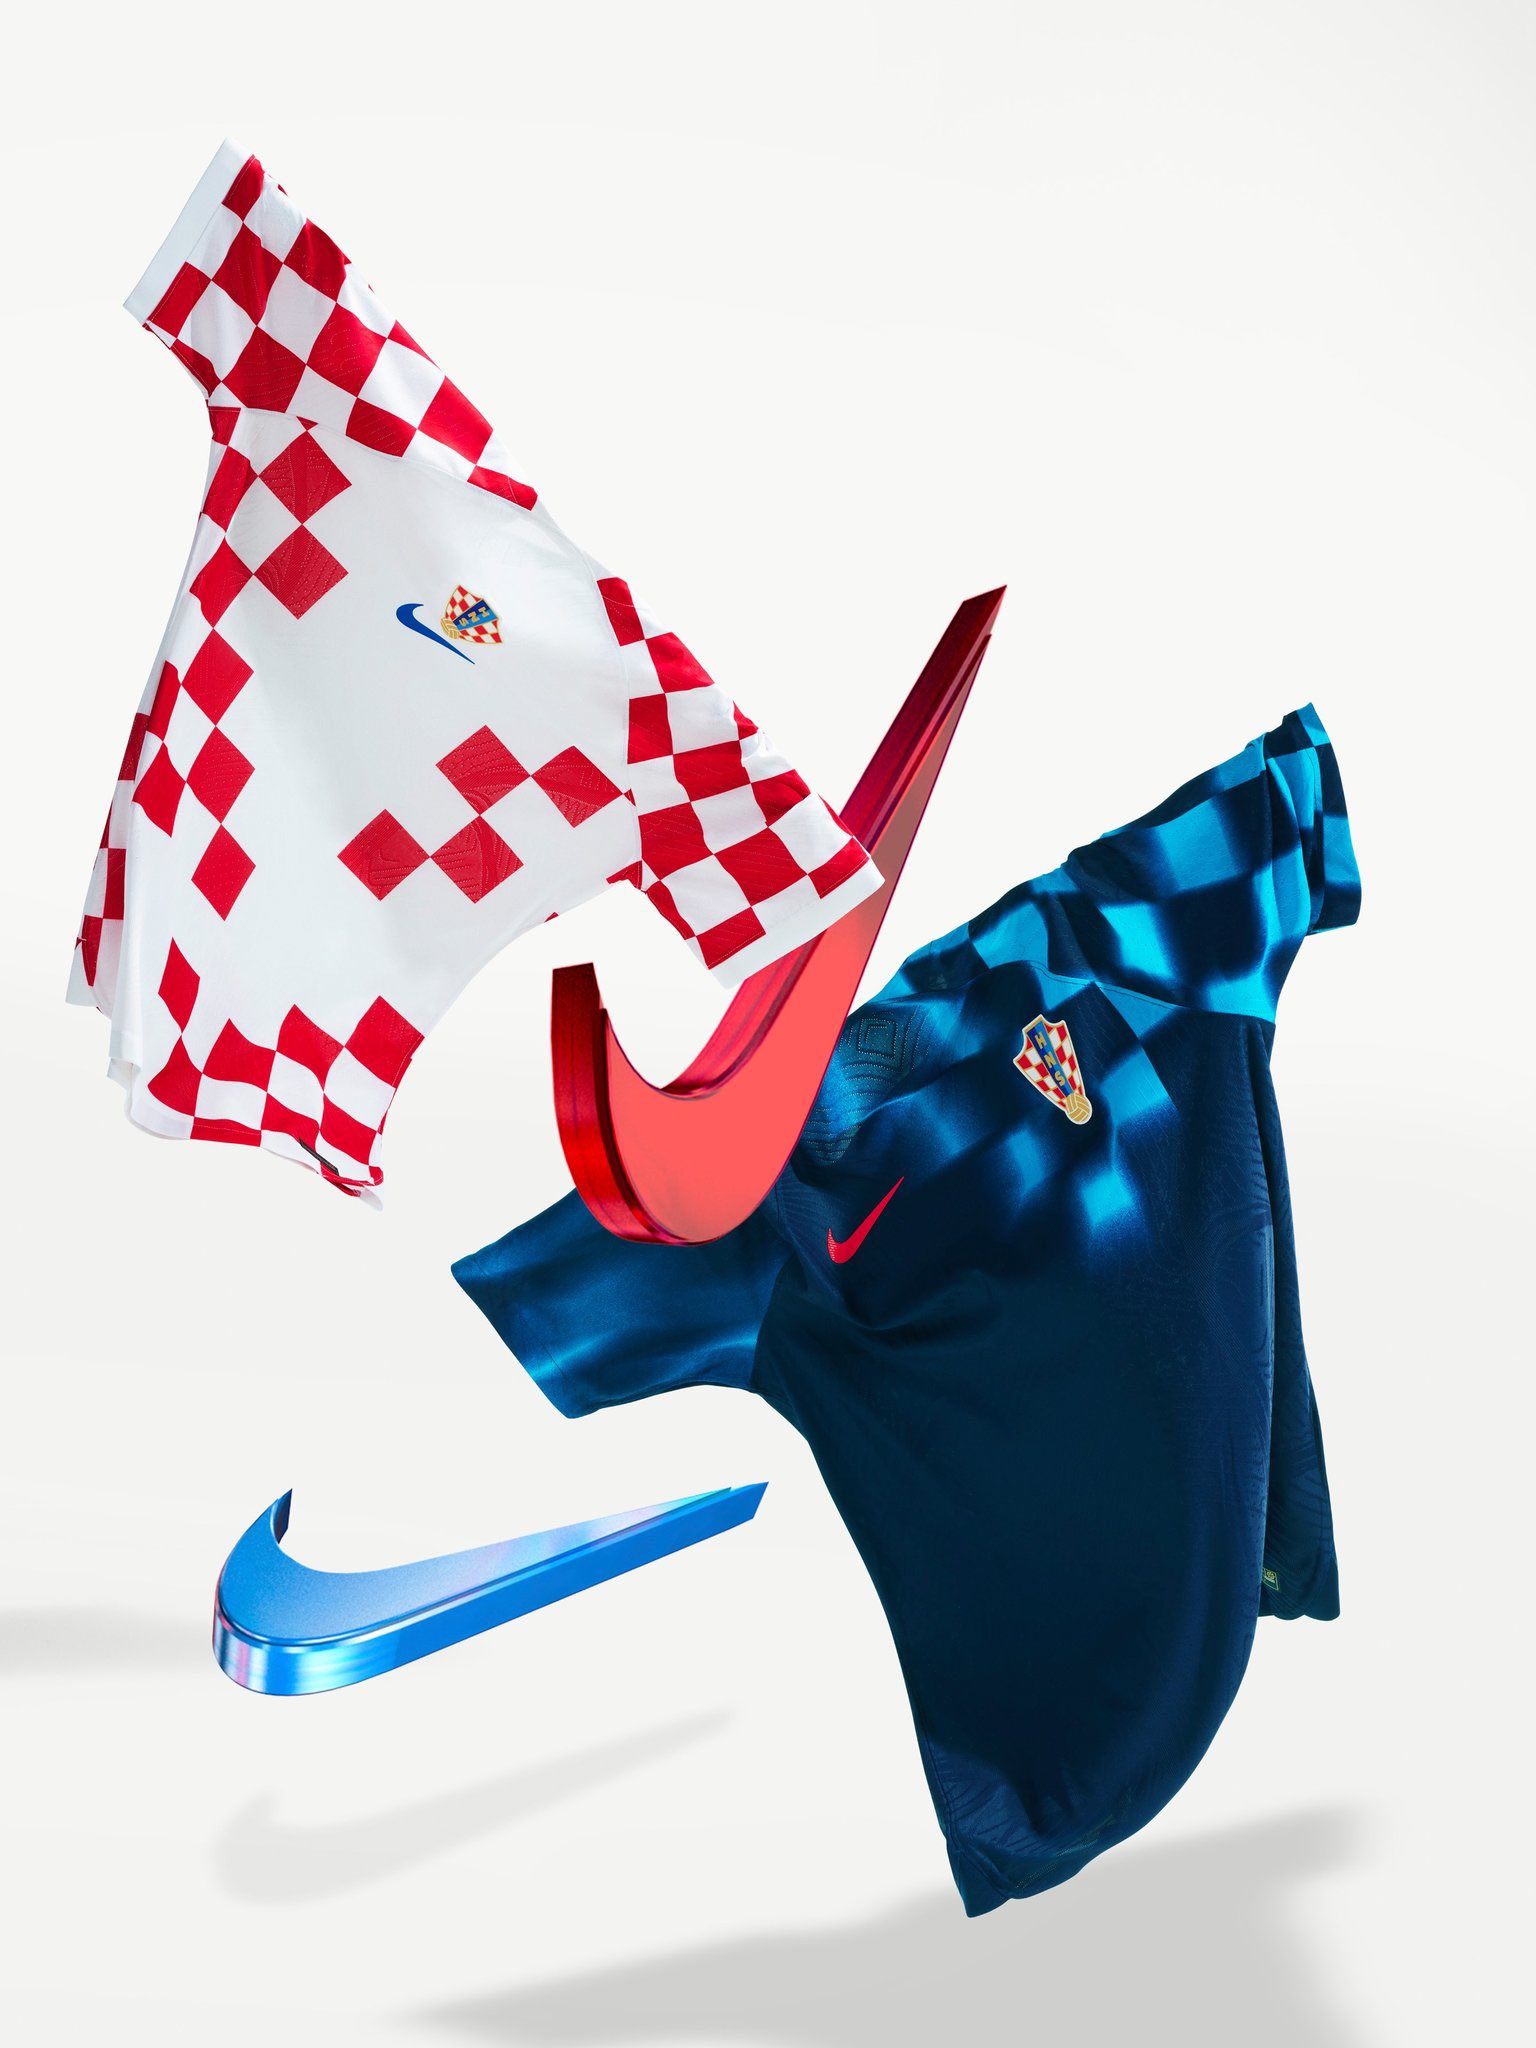 پیراهن کرواسی در جام جهانی 2022 قطر